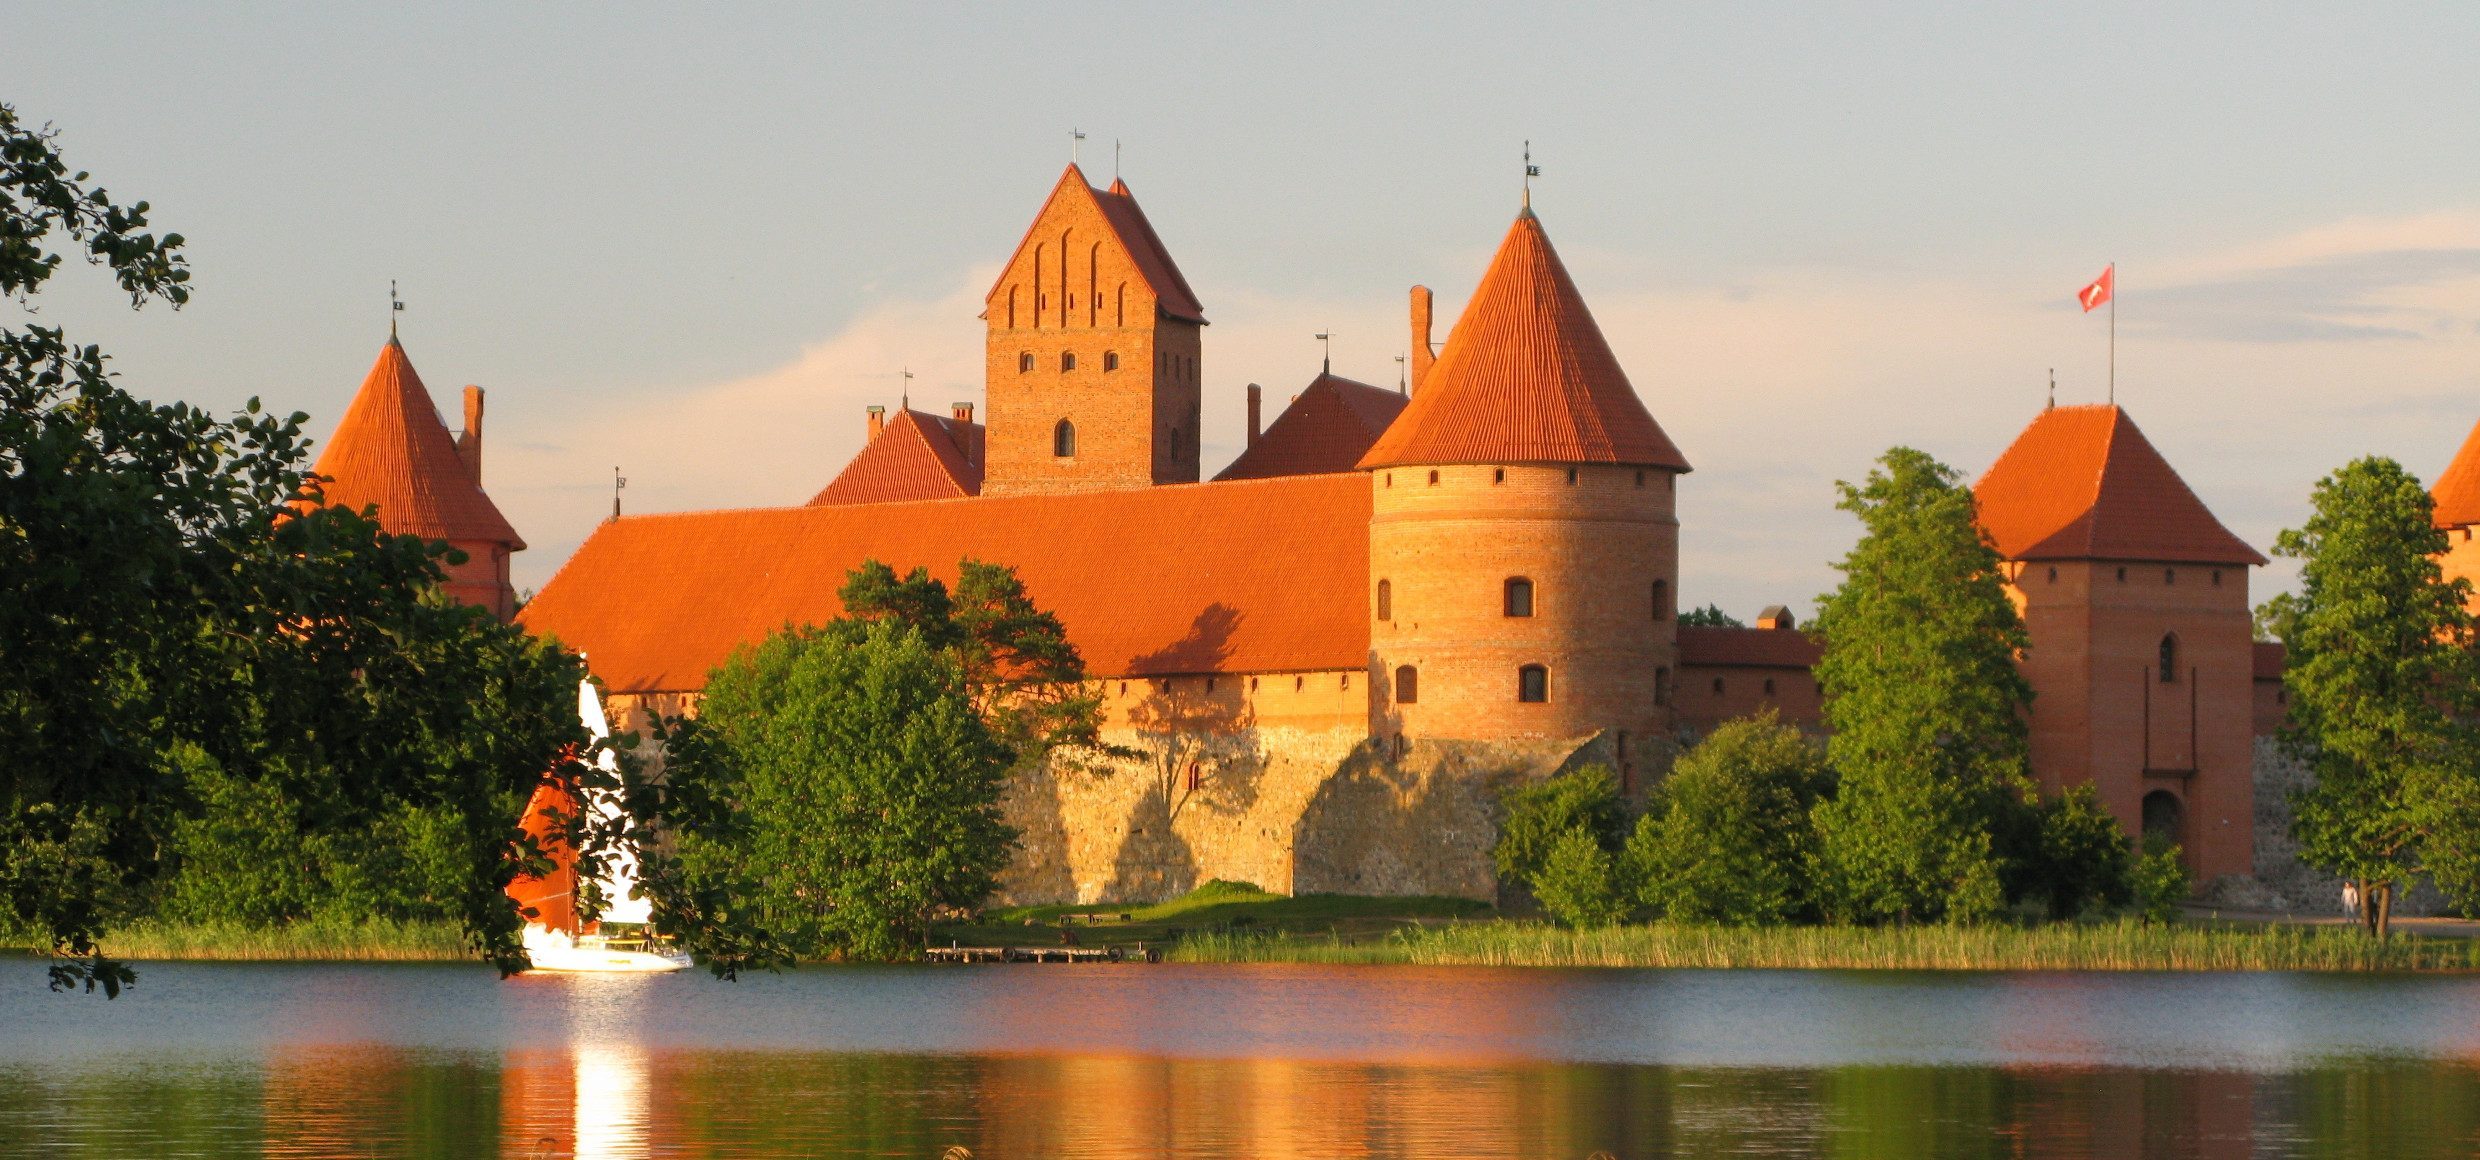 Litauen-Trakai-Castle